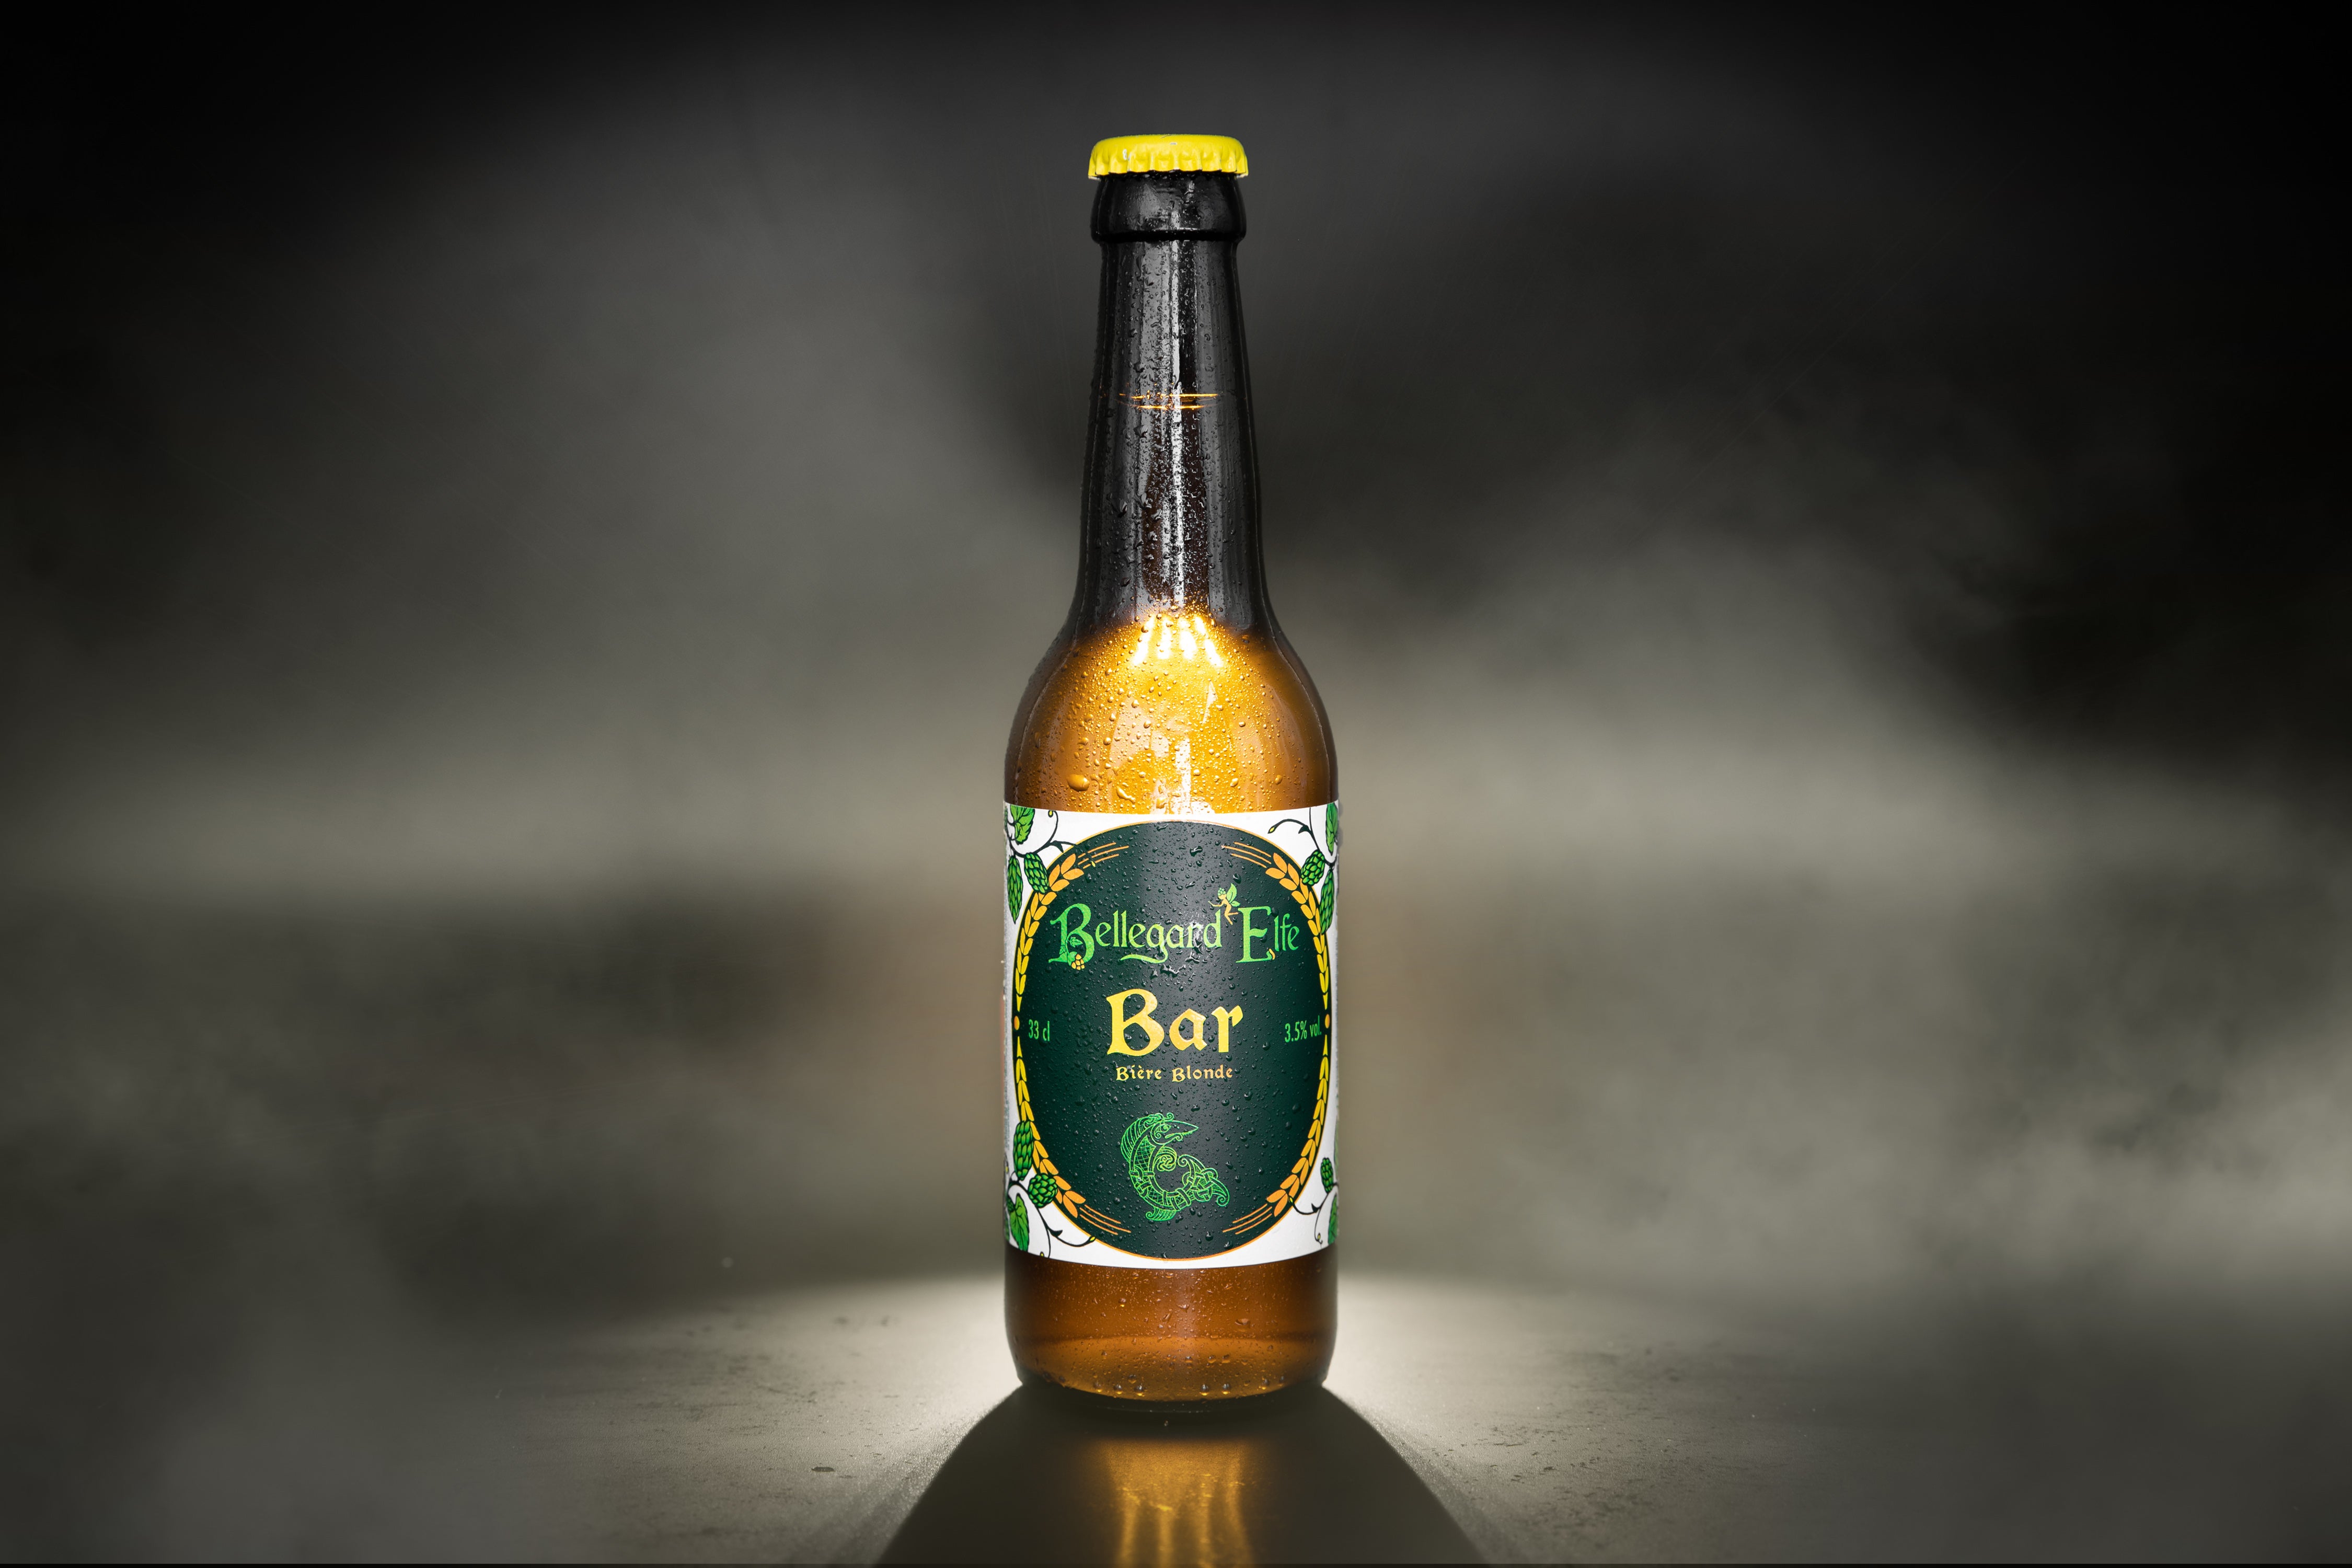 La bière artisanale du Bar, bière régionale et naturelle par Bellegard'Elfe dans le Gard